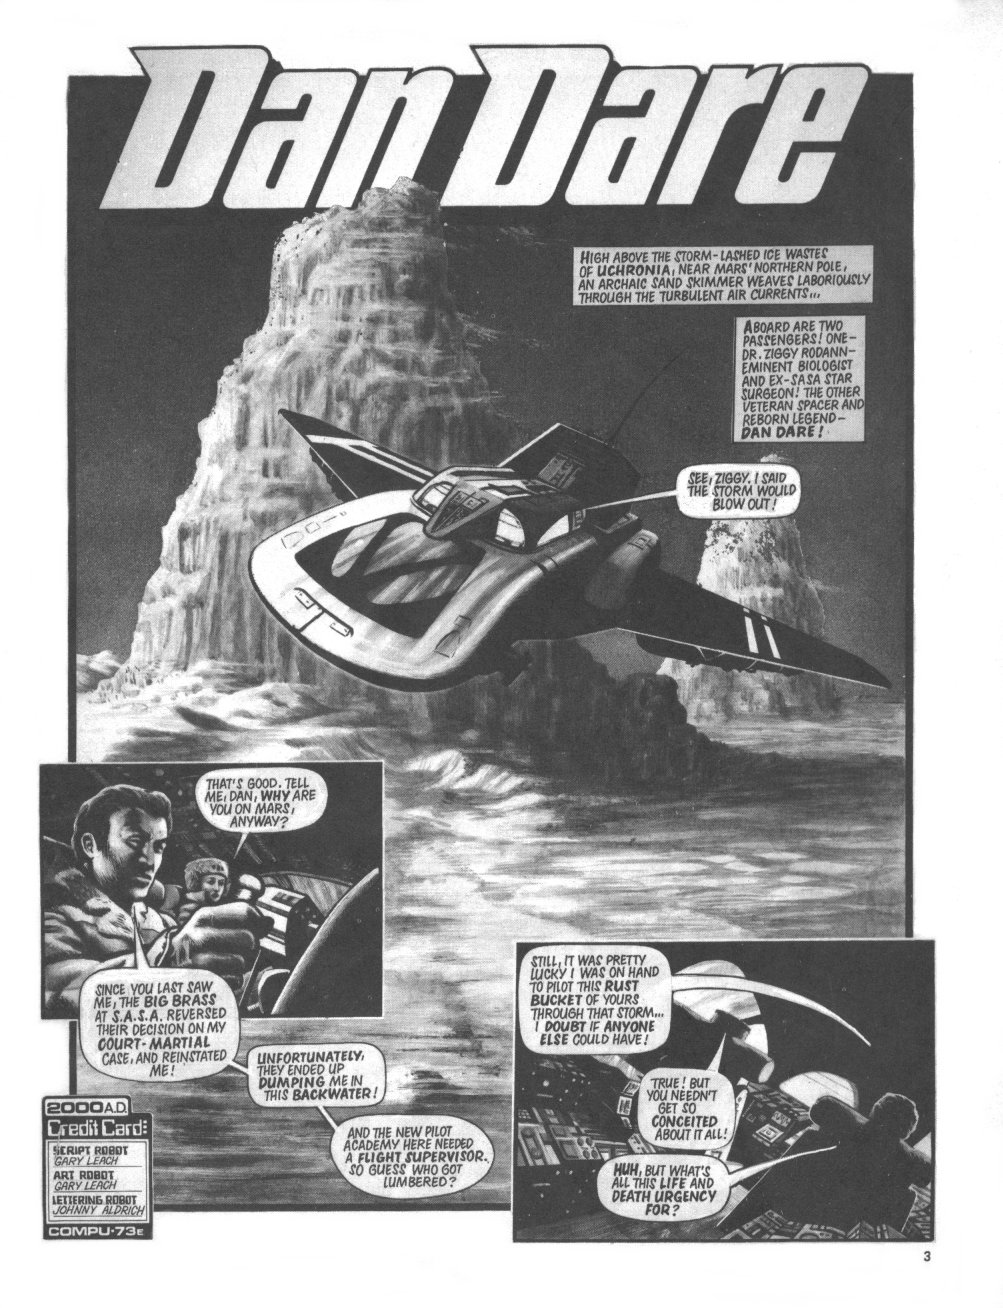 Dan Dare - 2000AD 1978 SciFi Special